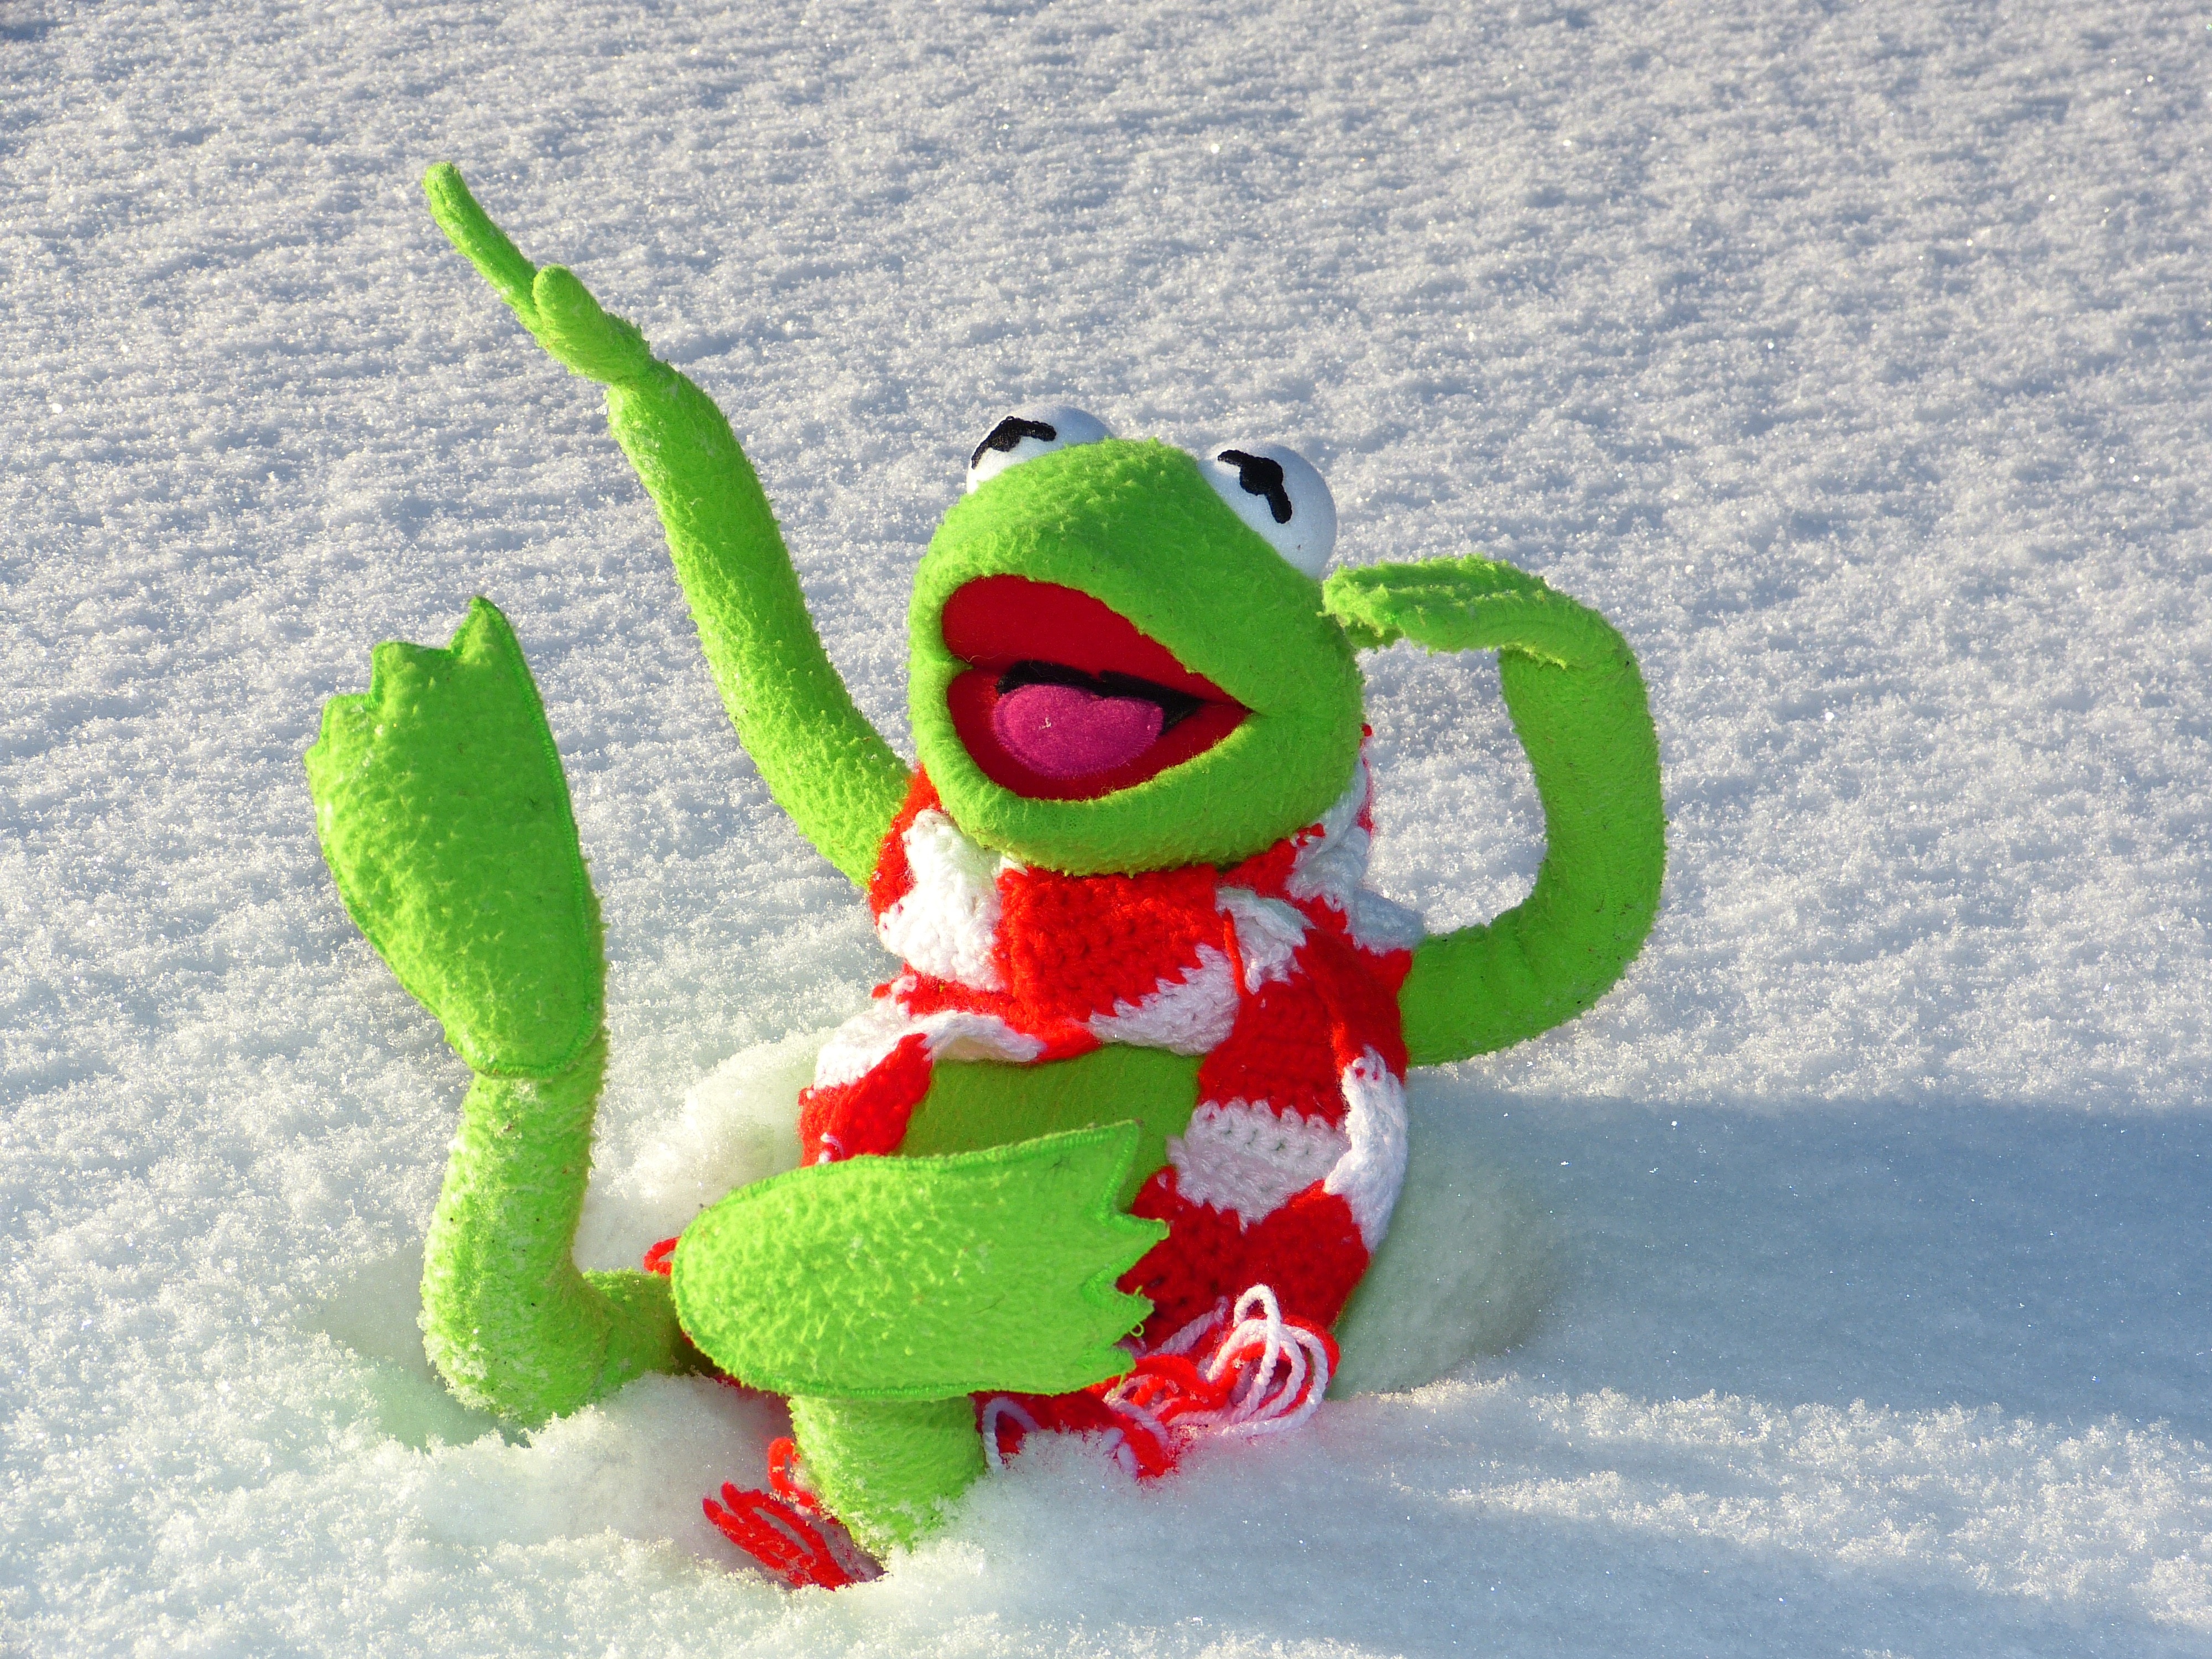 Cold, Winter, Frog, Snow, Fun, Kermit, green color, no people